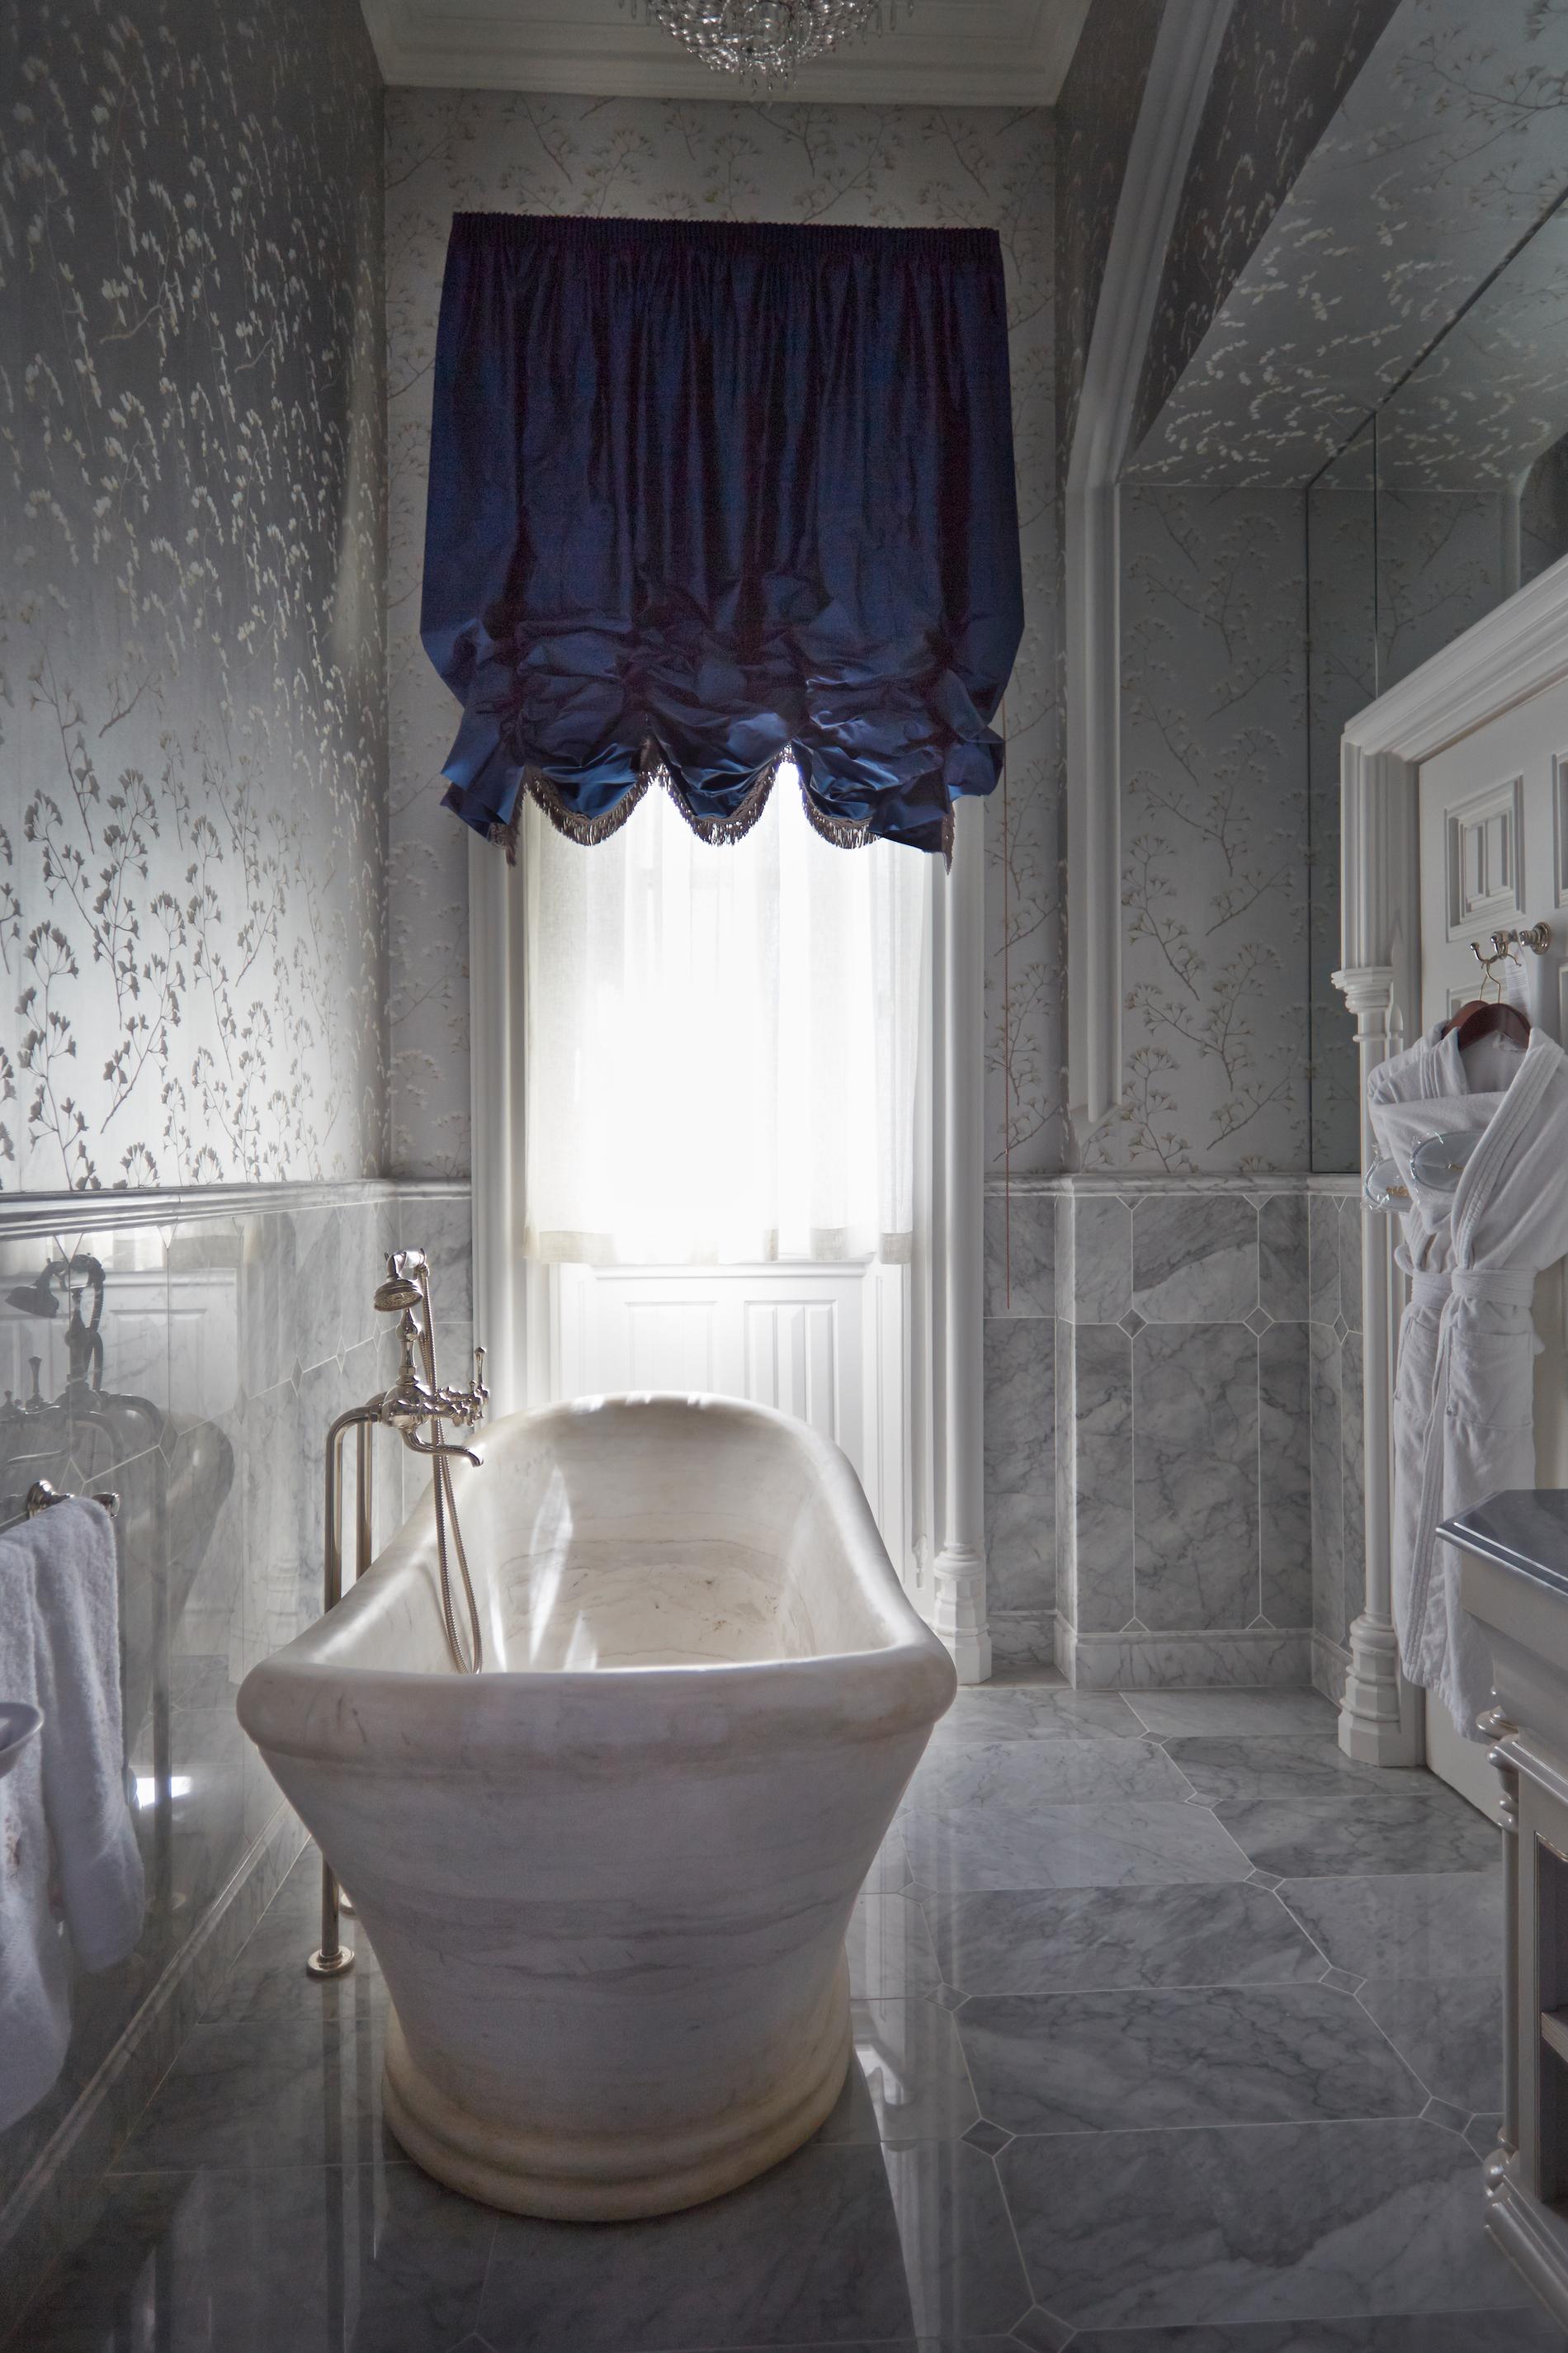 Varje dag ska paret spola 160 toaletter och pröva duscharna i de 83 gästrummen. ”Bra motion”, enligt Laura Jamieson.